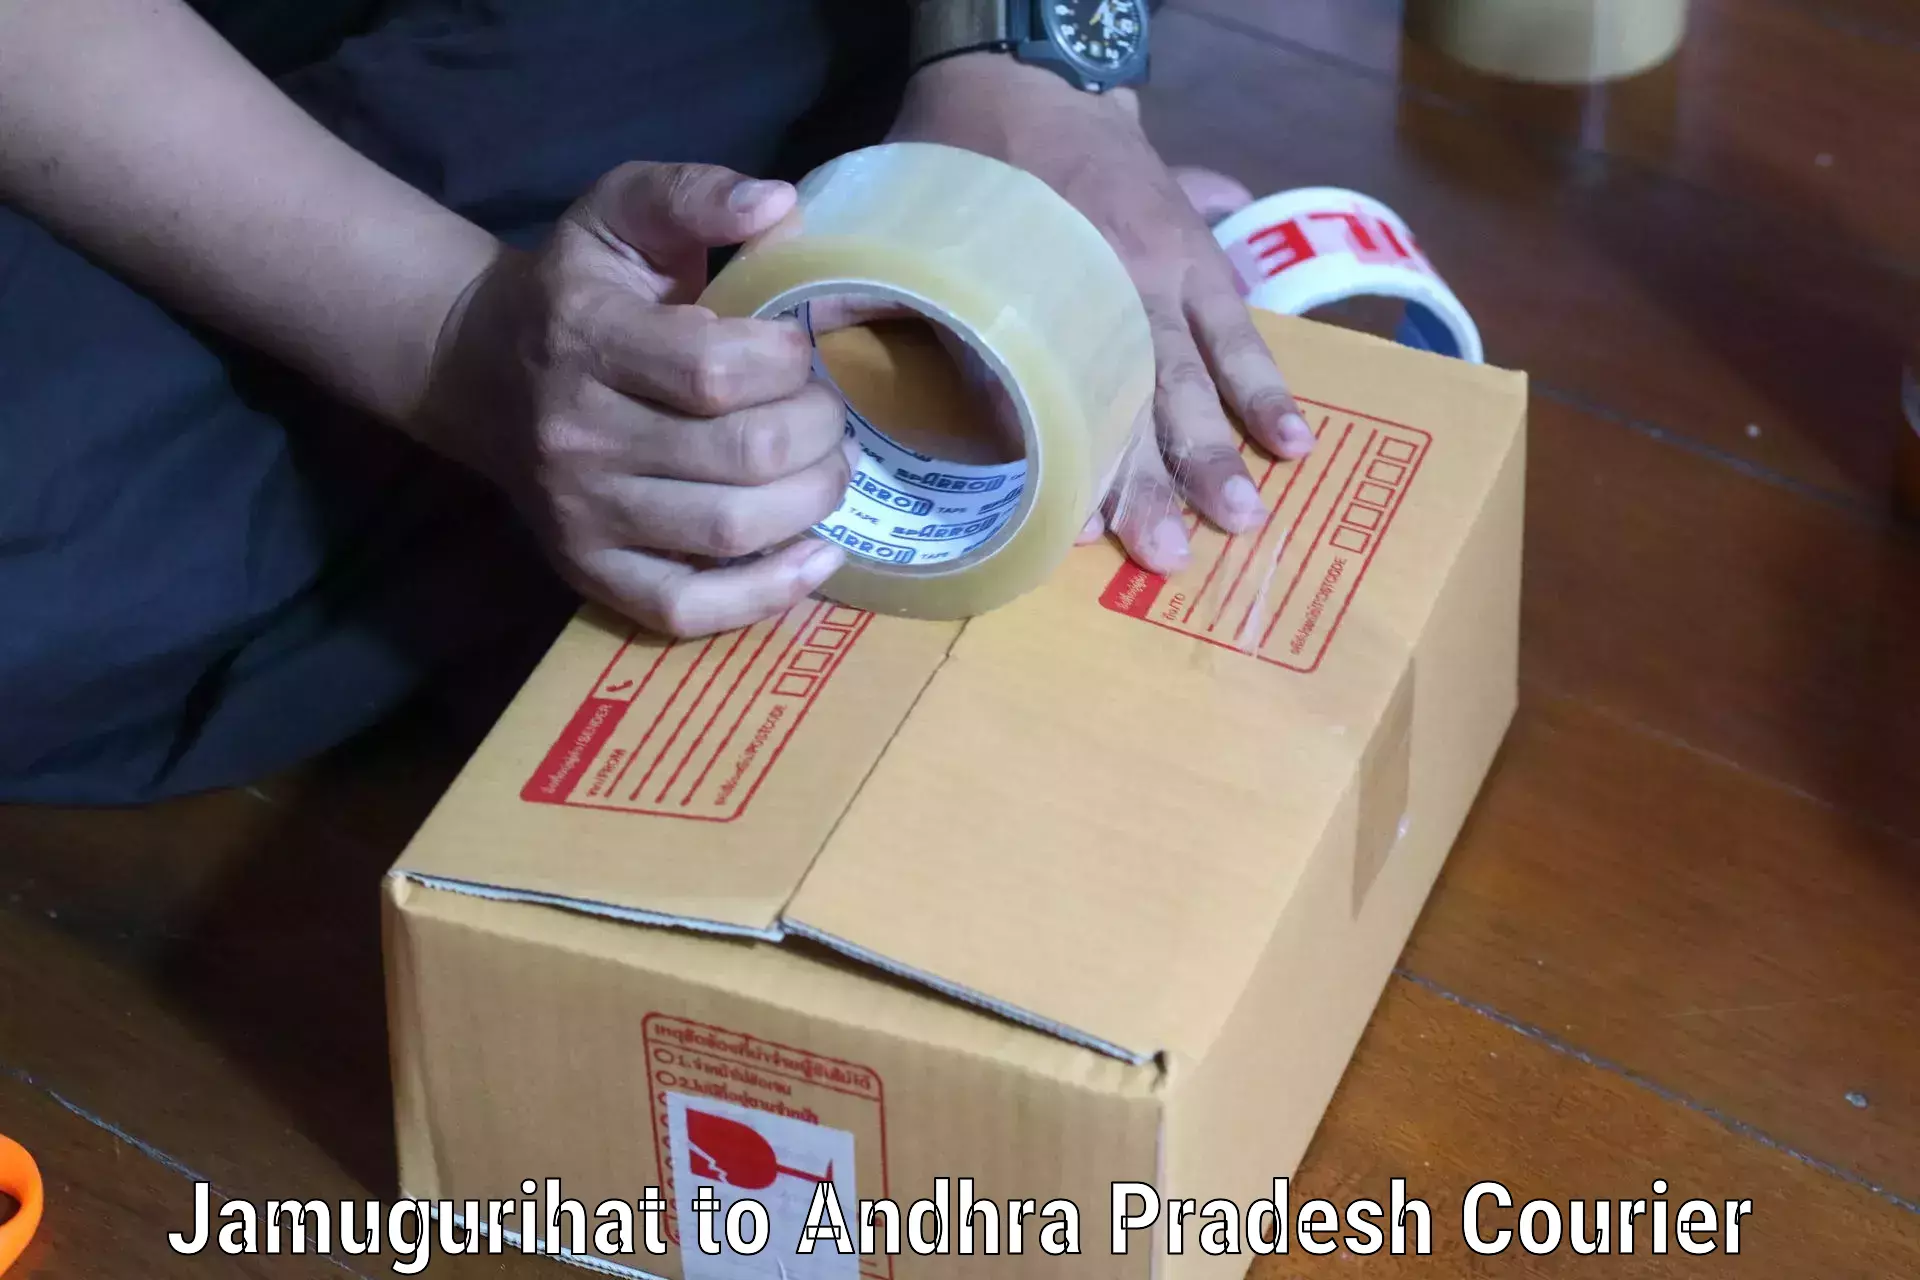 Affordable parcel service Jamugurihat to Kathipudi